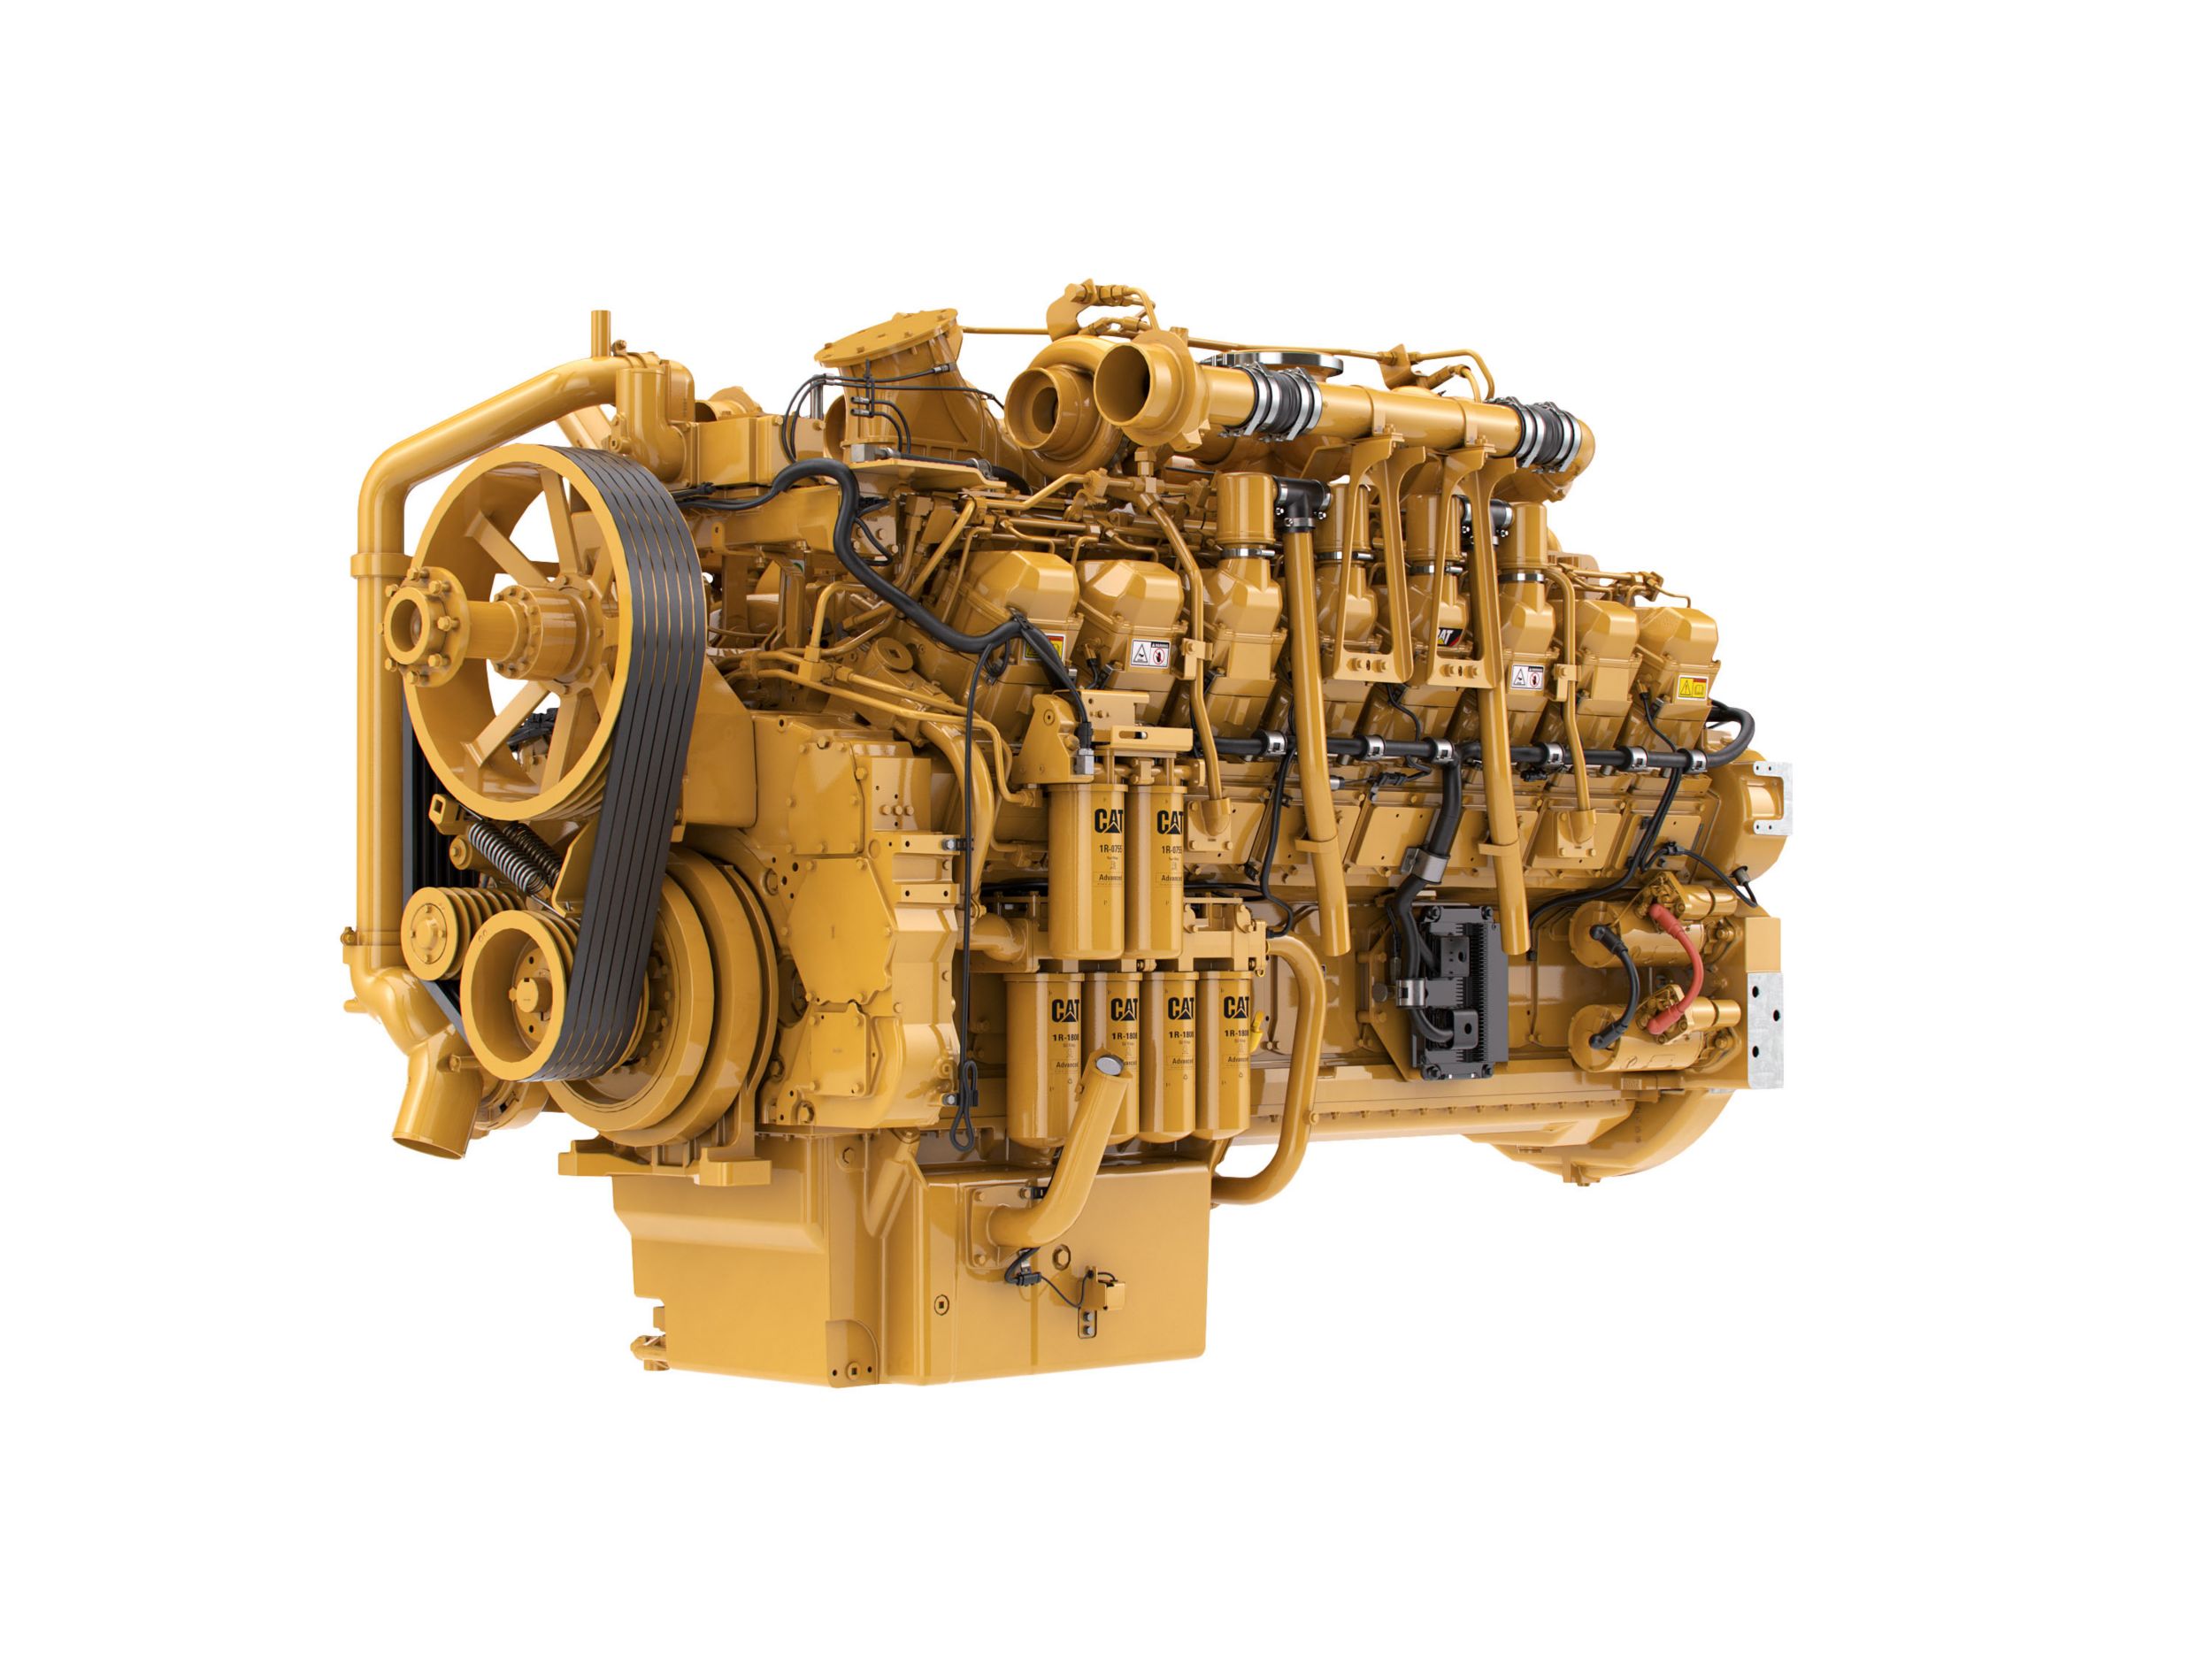 Motores Diesel 3516 LRC - Menos Regulamentados e Não Regulamentados